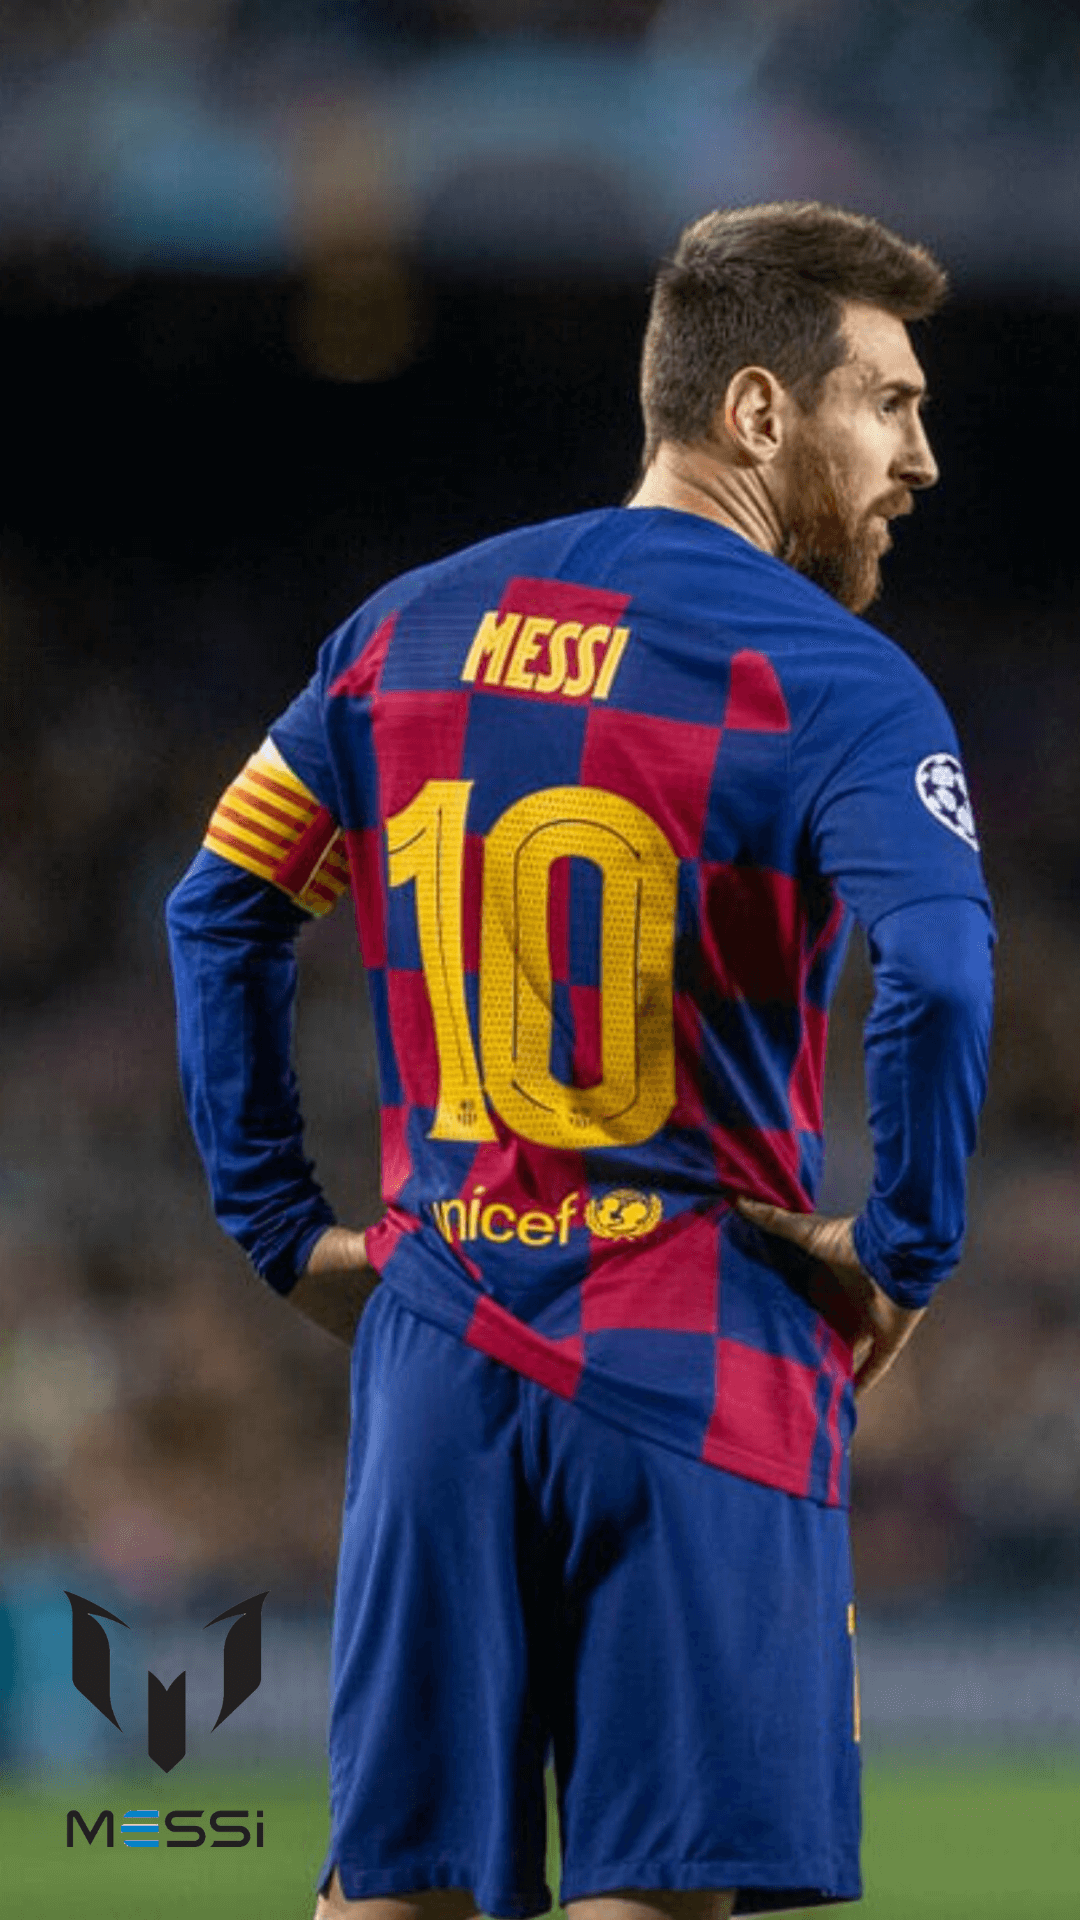 Tải xuống những hình nền di động 4K Messi 2020 để thể hiện tình yêu và sự tôn trọng với huyền thoại bóng đá này, đồng thời cũng cập nhật những hình nền mới nhất đầy sáng tạo.